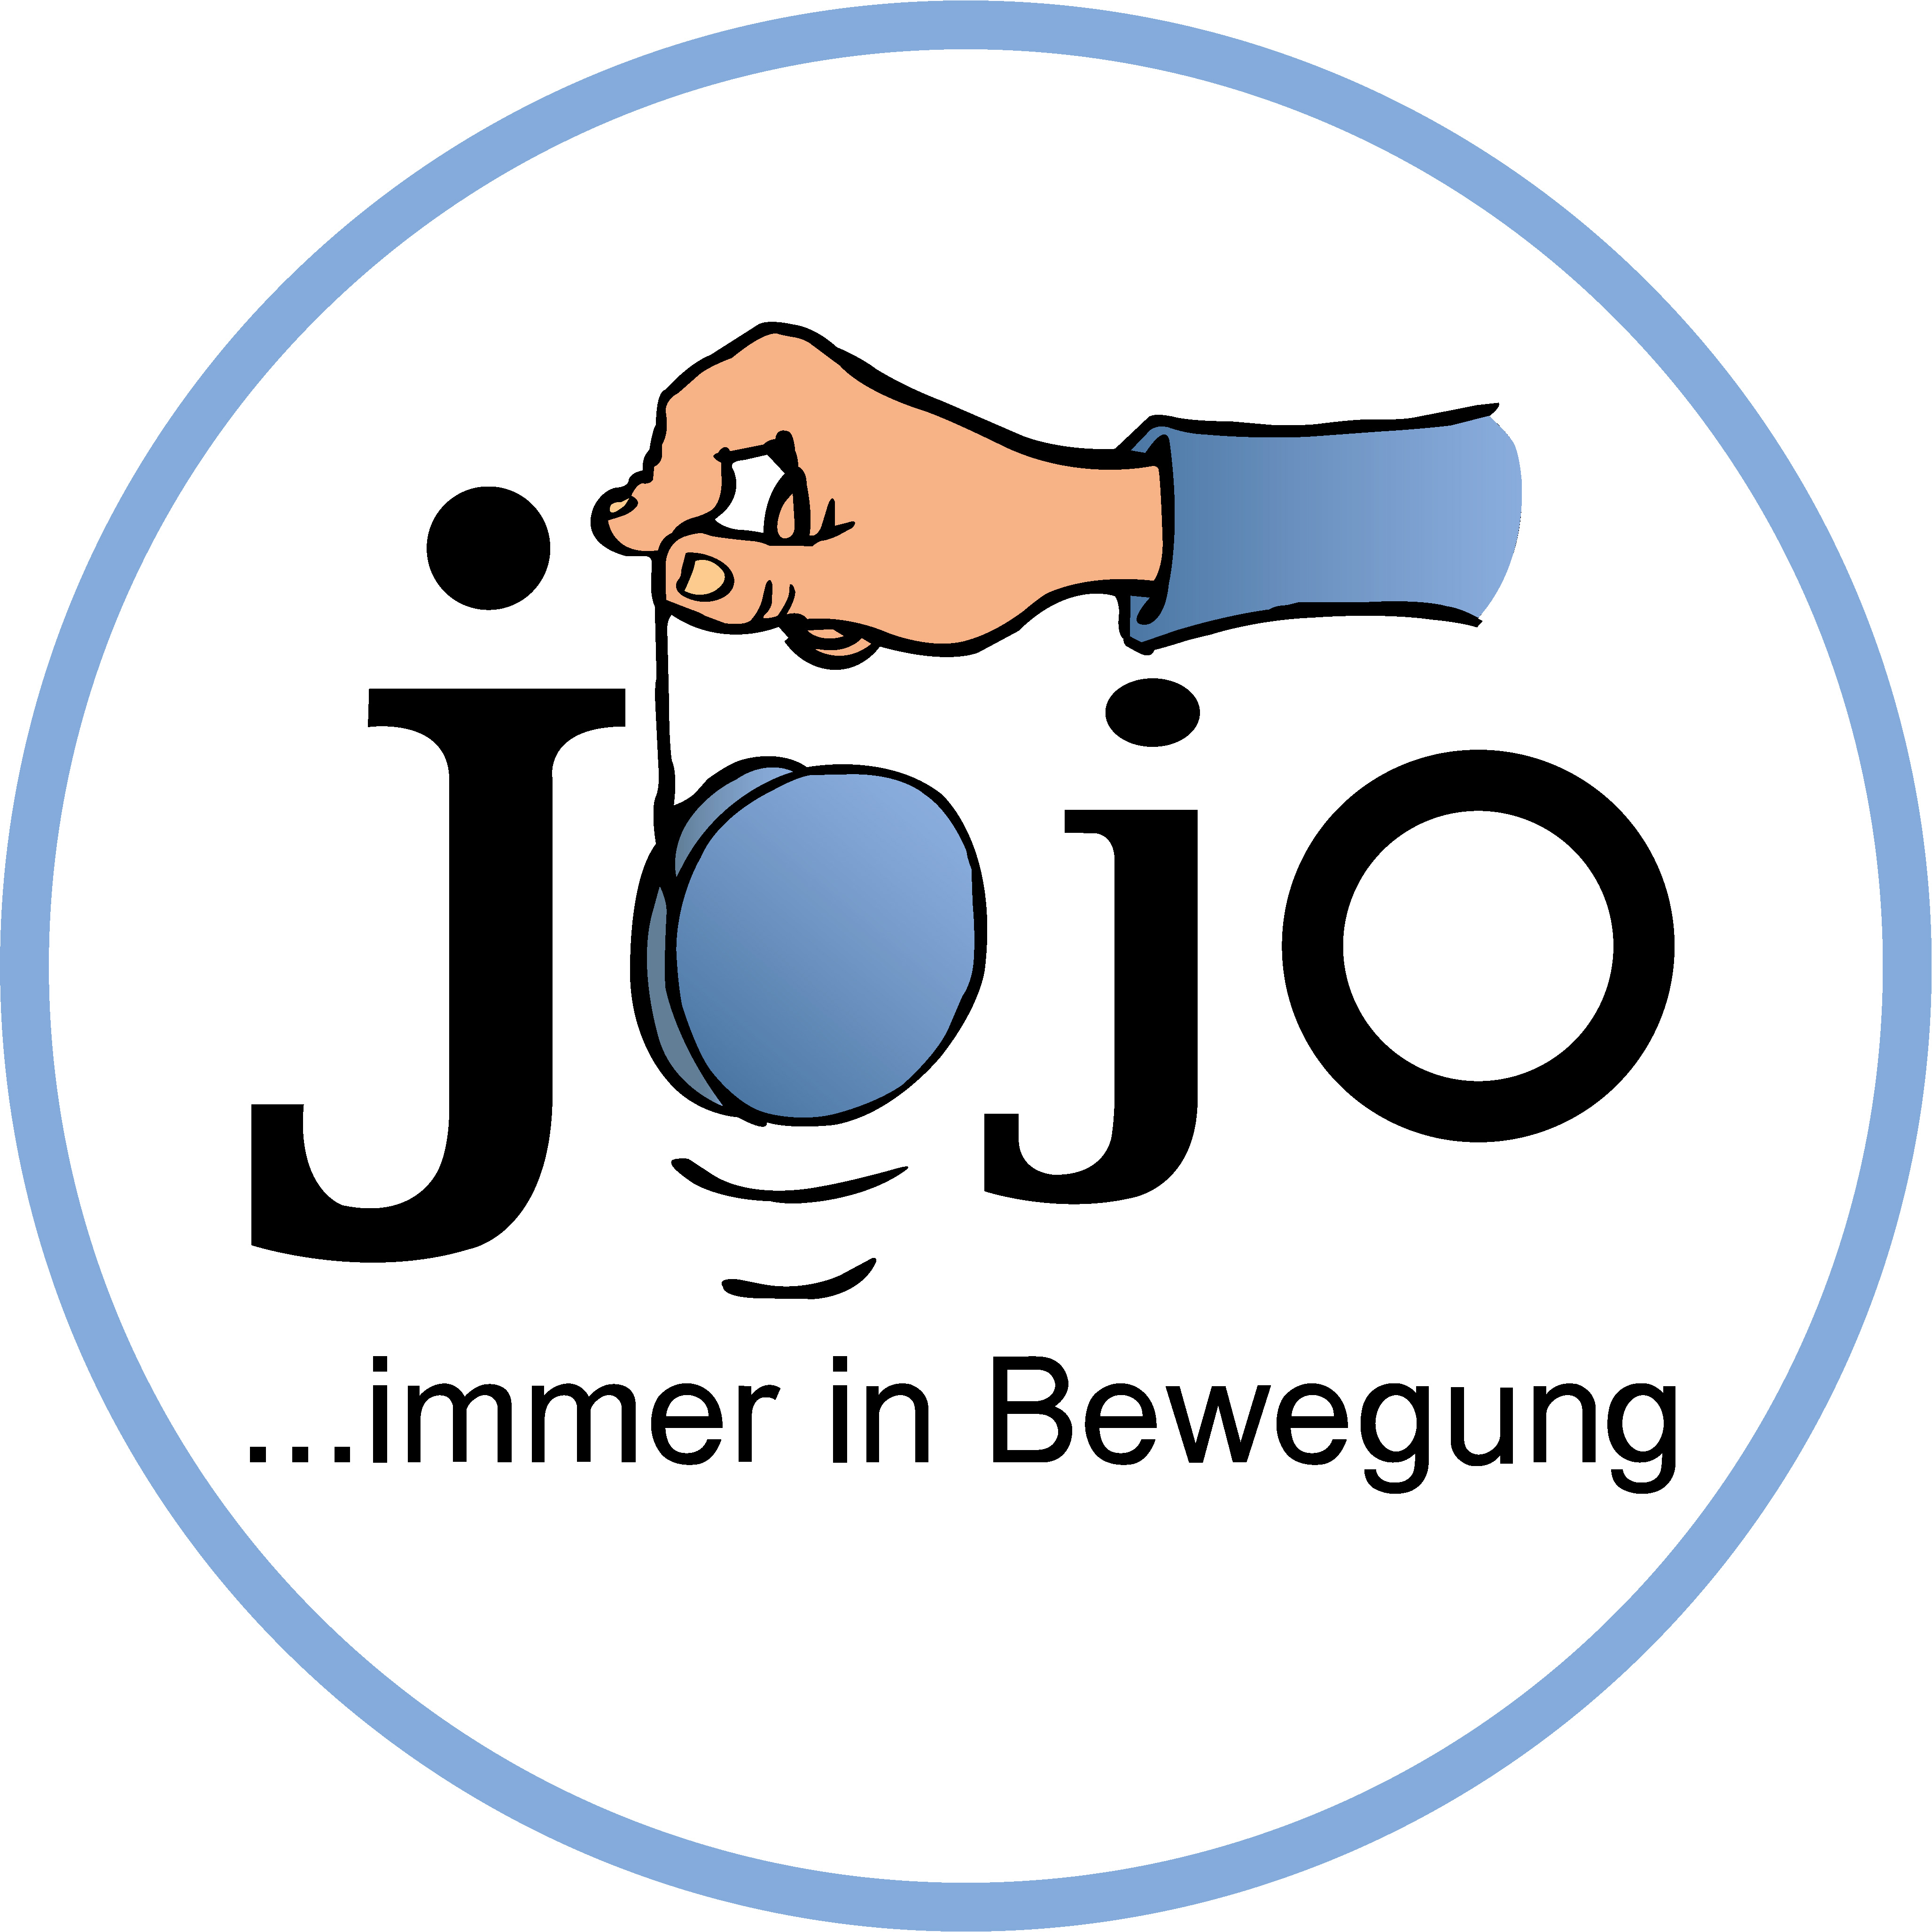 Jojo education